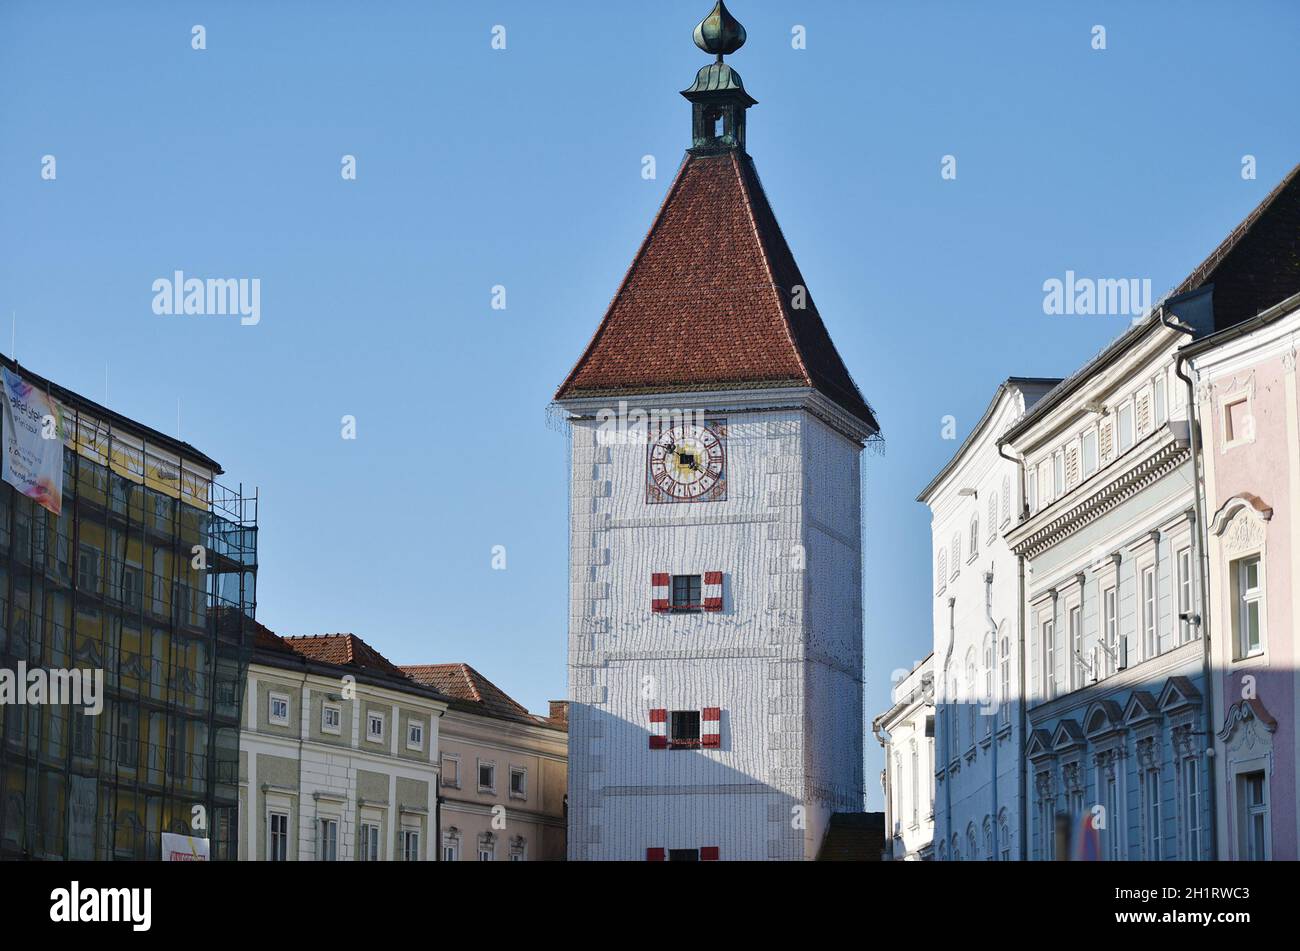 Der Stadtplatz der alten Handelsstadt Wels, Österreich, Europa - The town square of the old trading town of Wels, Austria, Europe Stock Photo